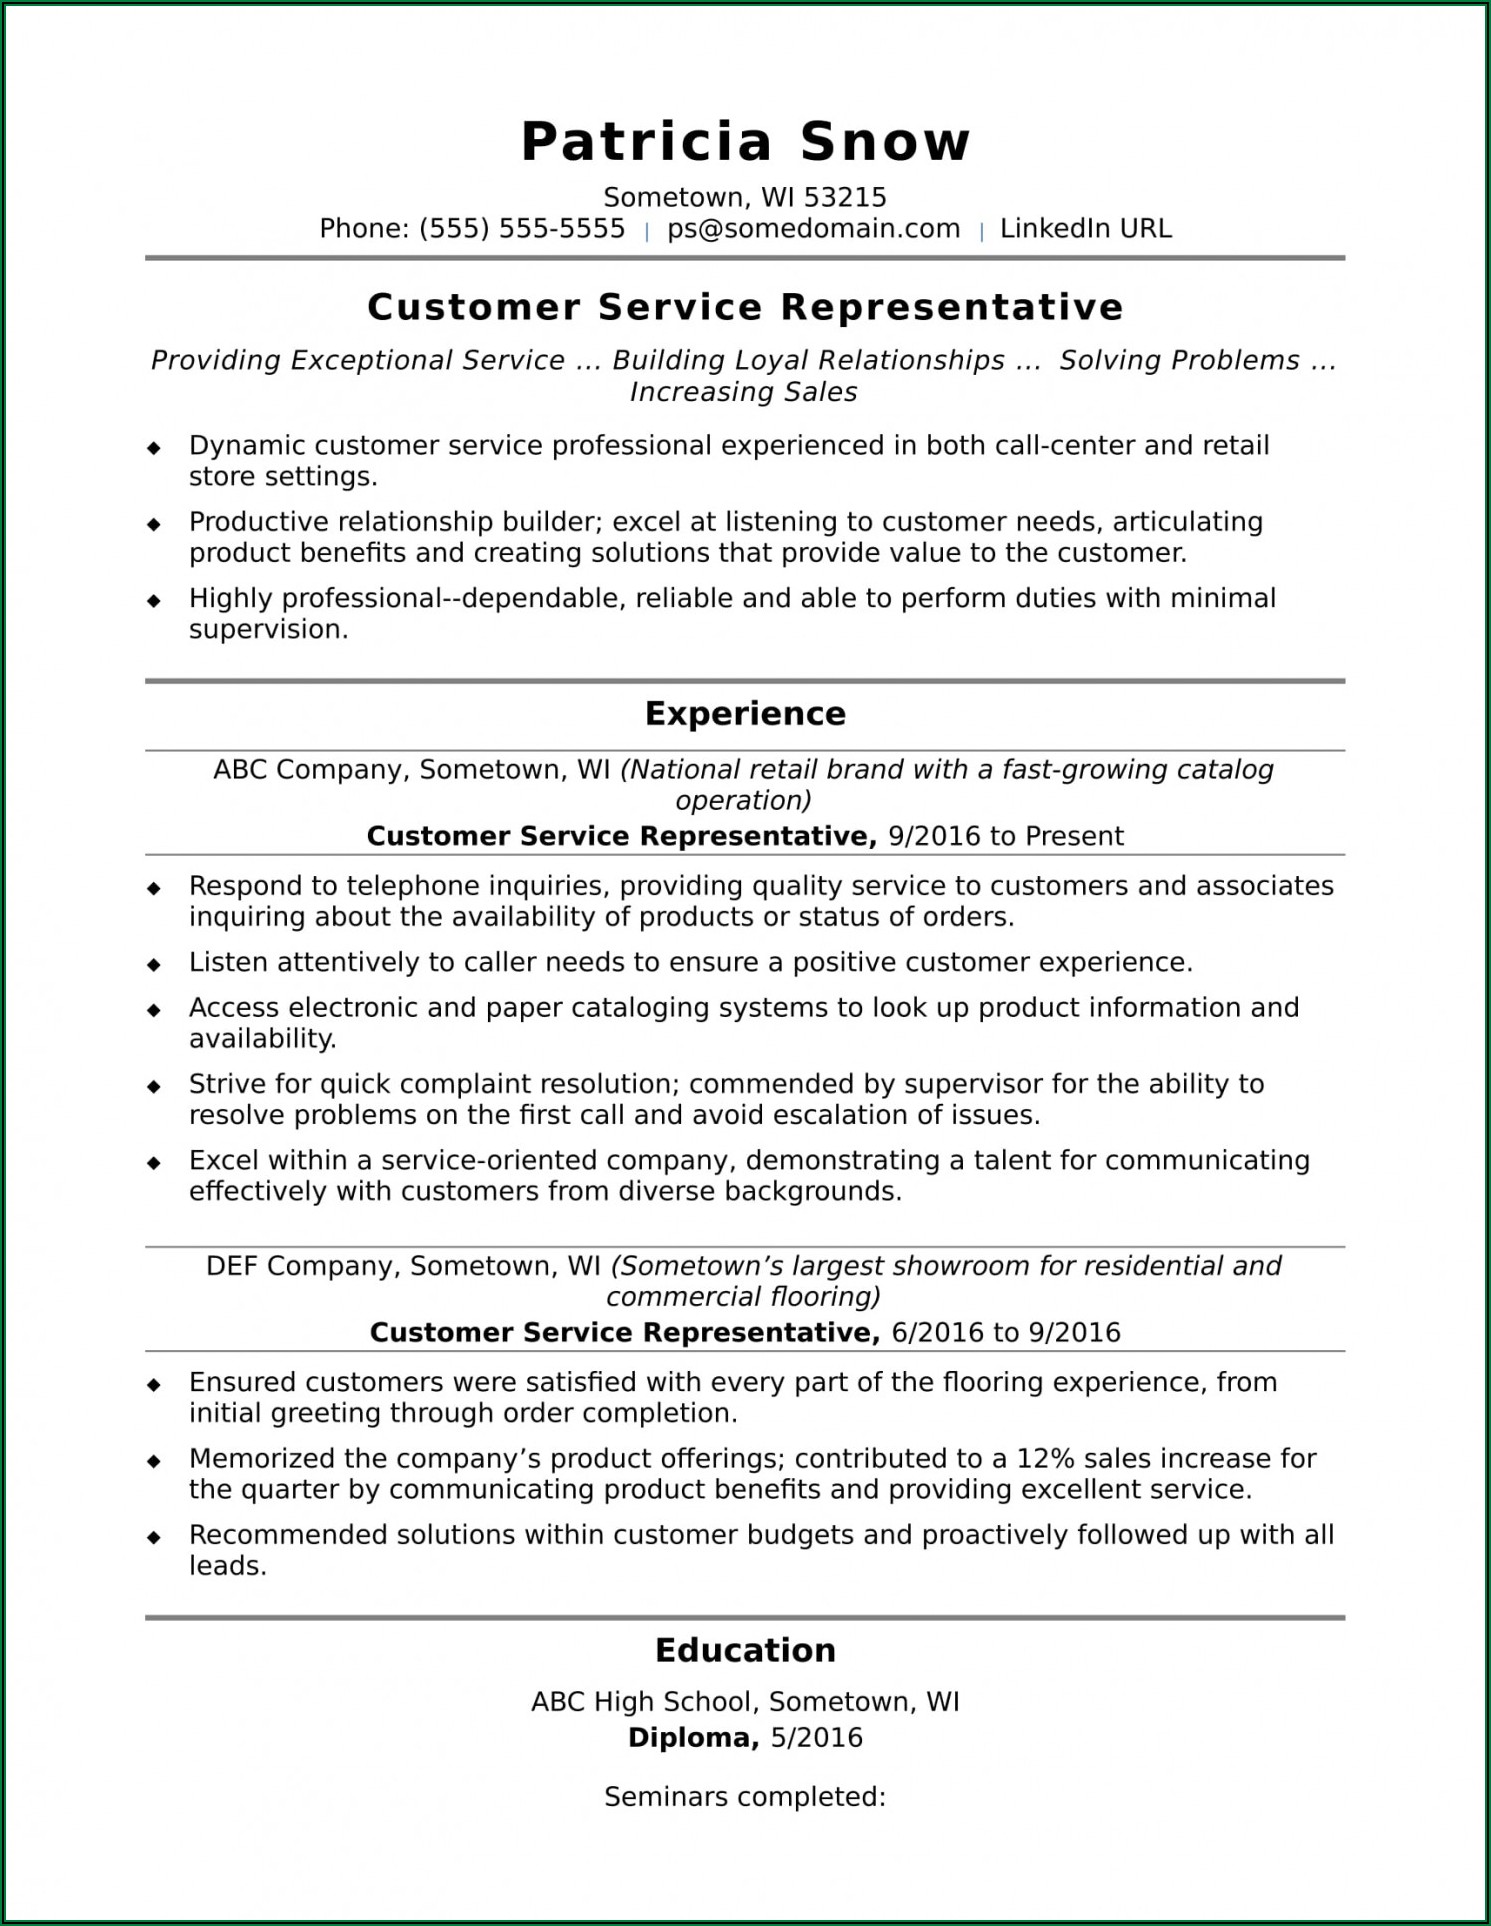 Sample Resume For Customer Service Representative In Retail